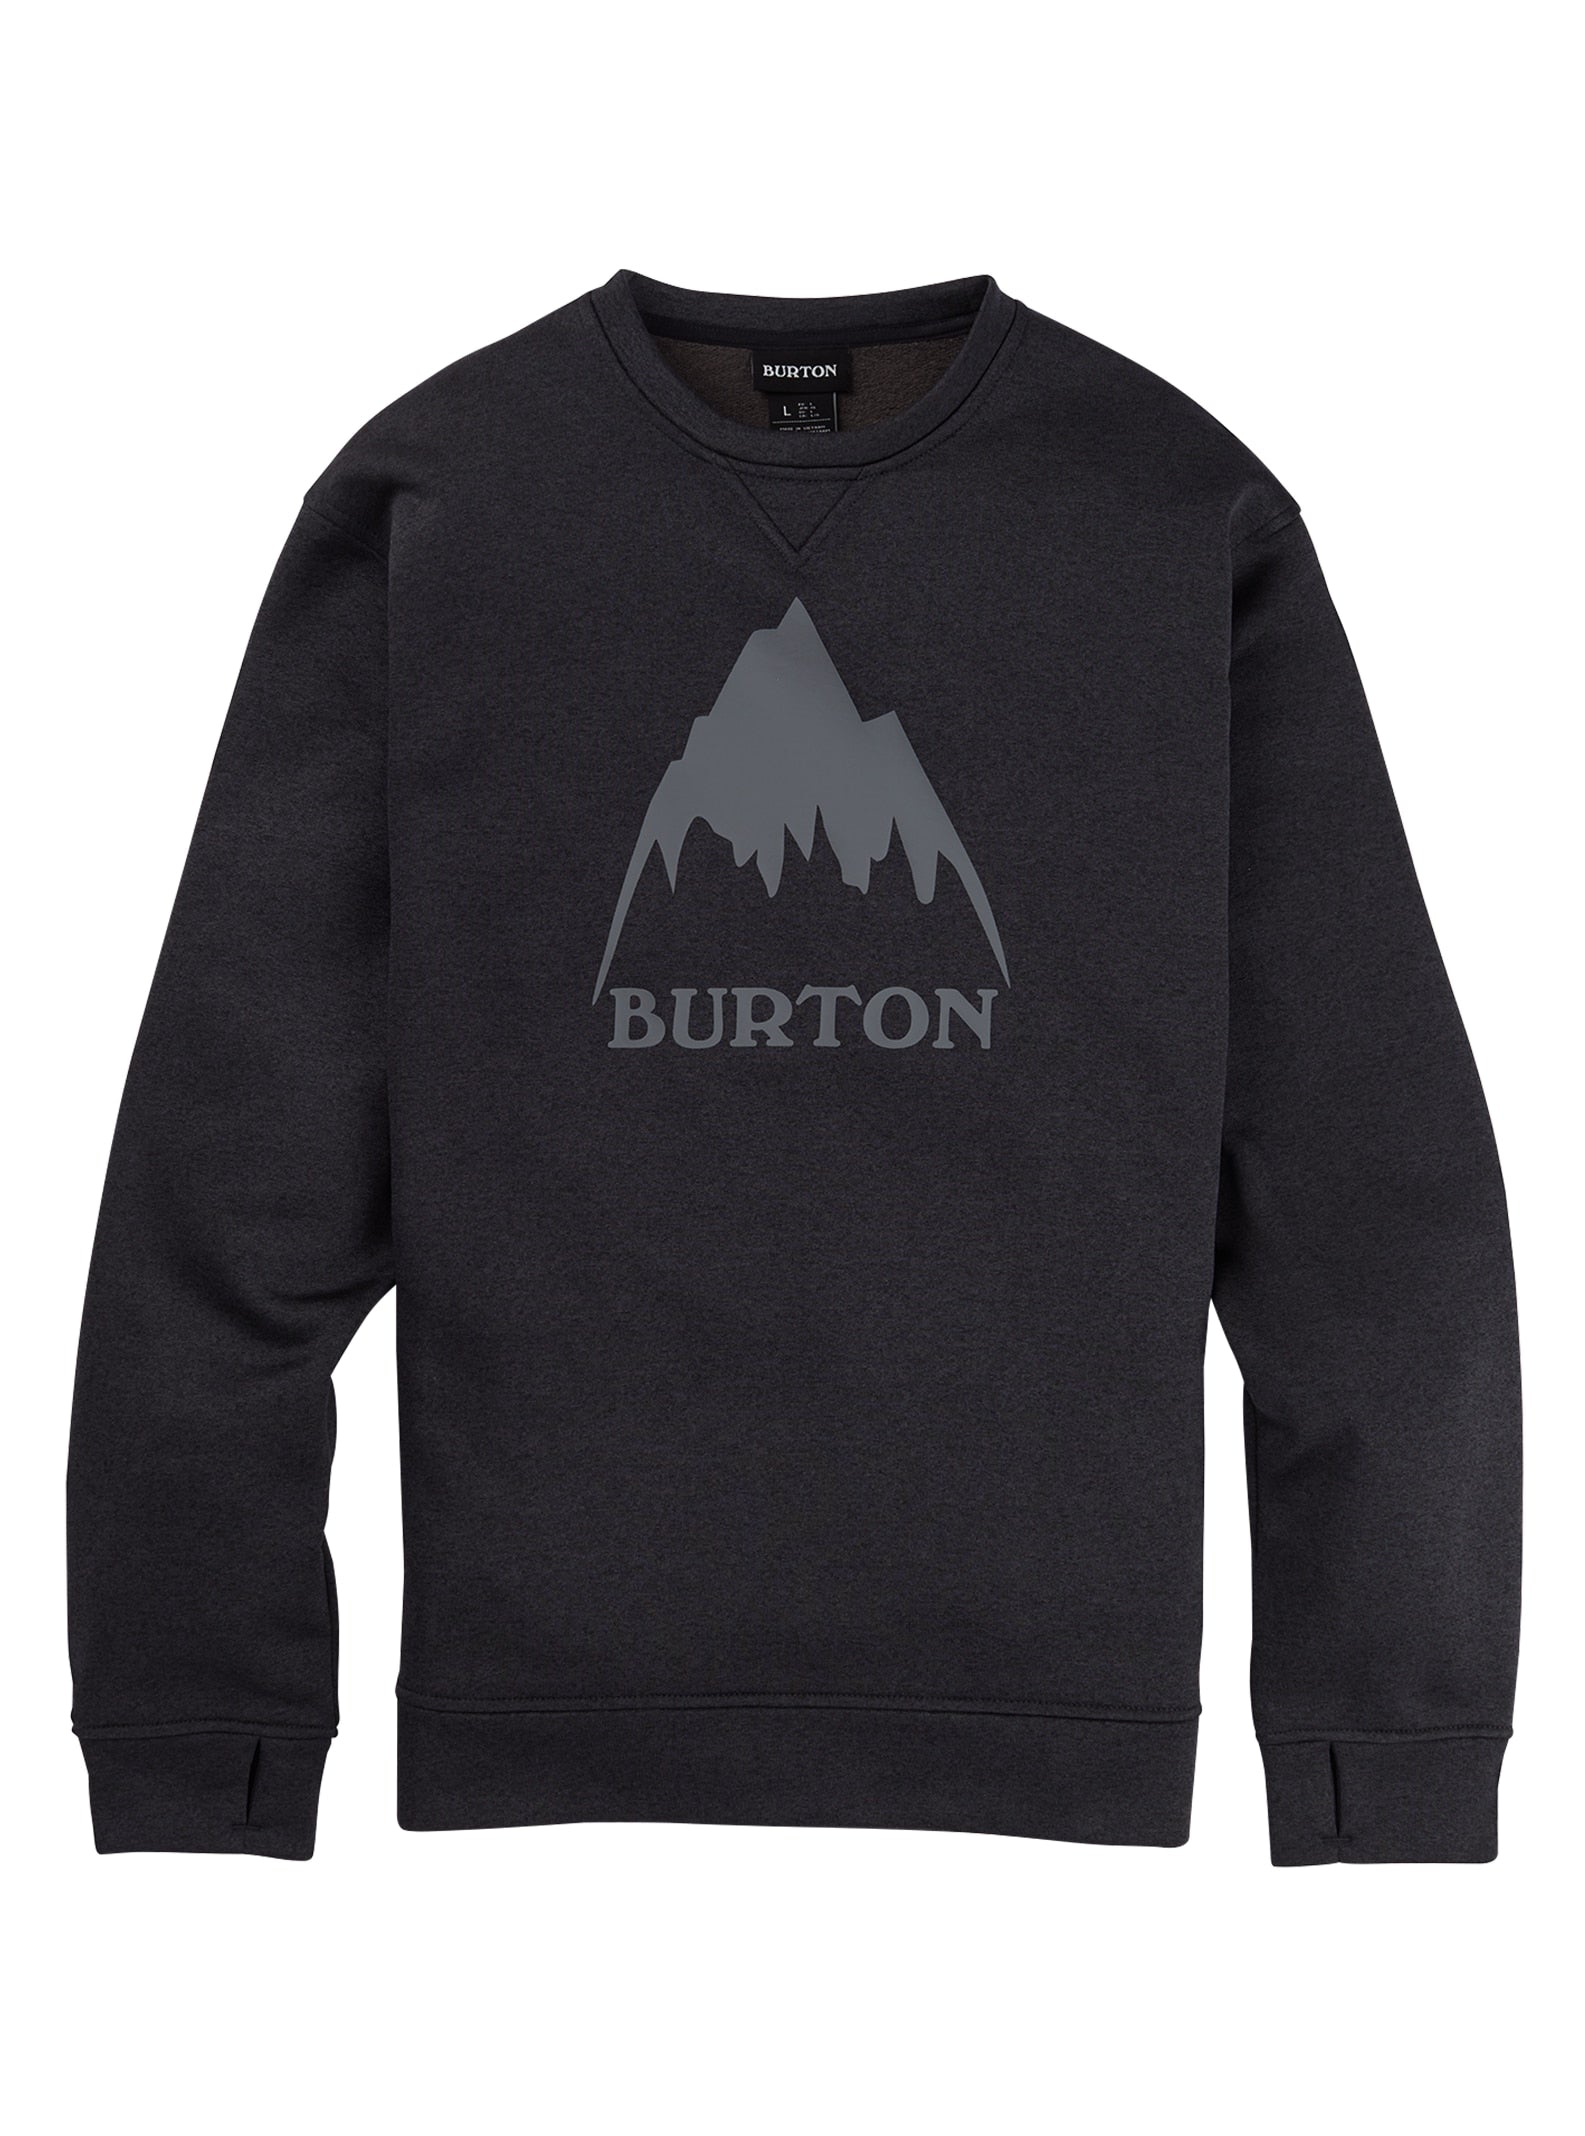 Burton Men's Oak Pullover Crew True Black Heather | Burton Snowboards | Snowboard Shop | Sudaderas de snowboard | Todas las sudaderas | surfdevils.com